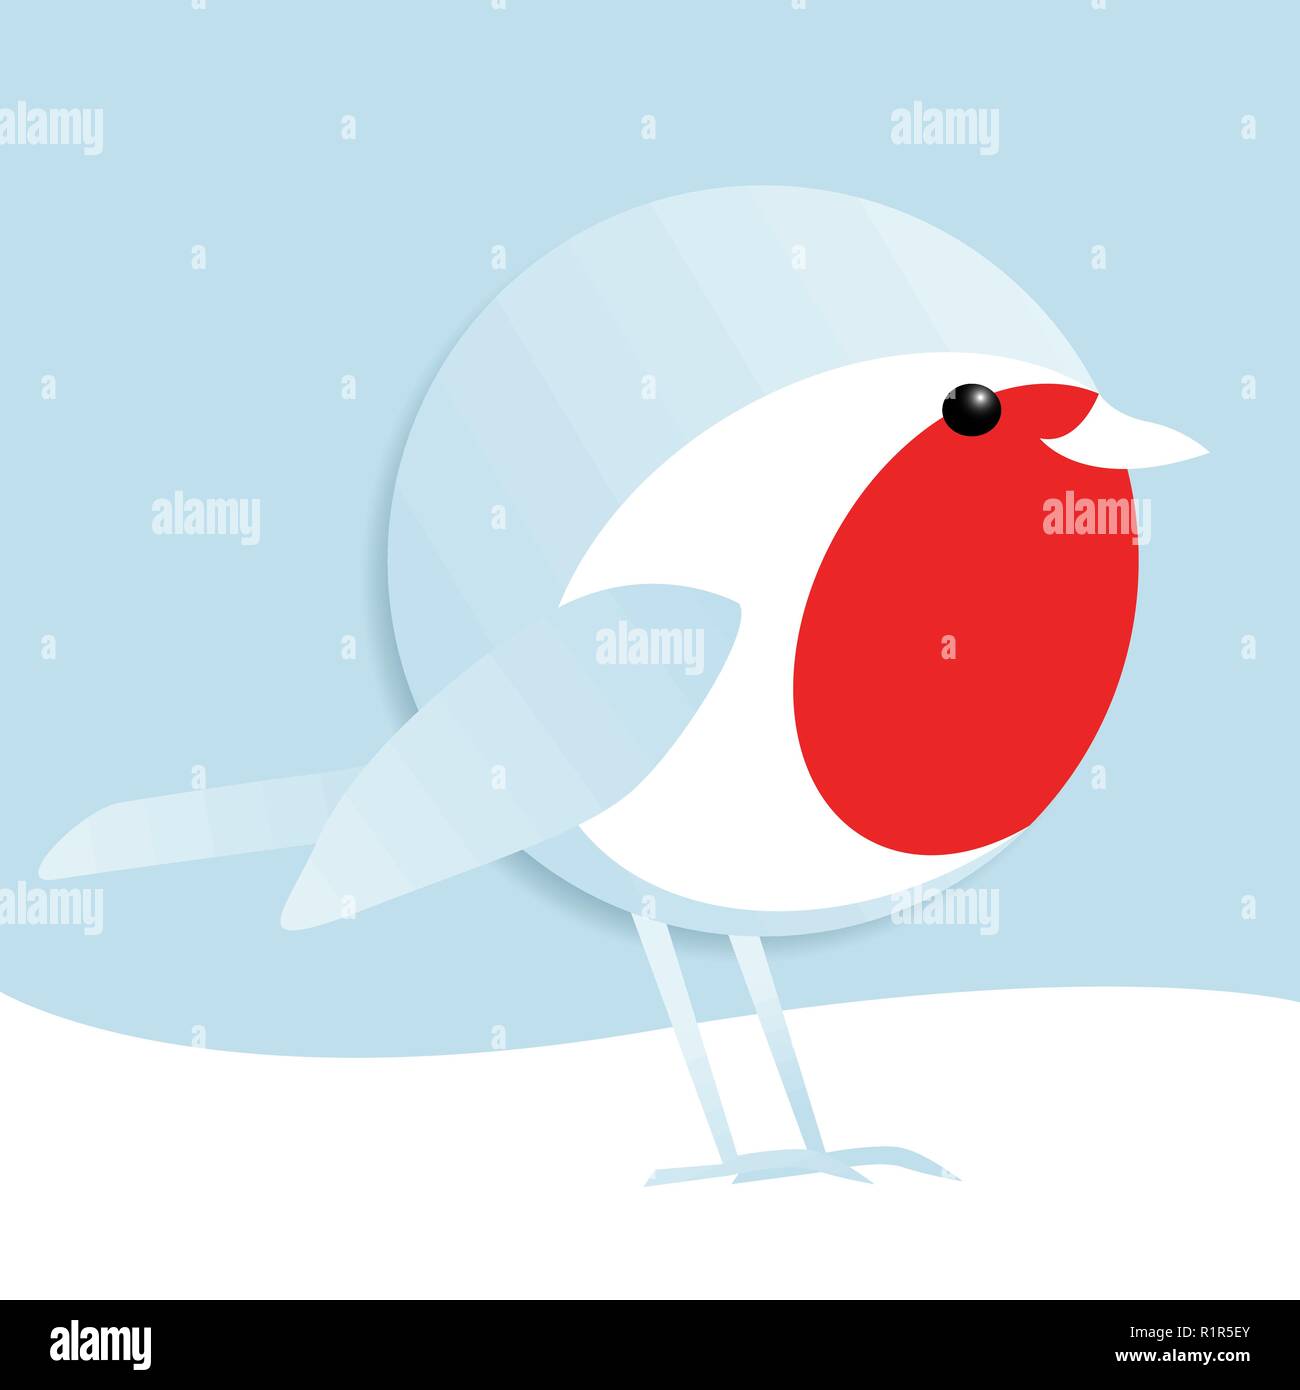 Einfachen vektor Illustration einer netten männlichen Robin redbreast steht im Schnee Stock Vektor